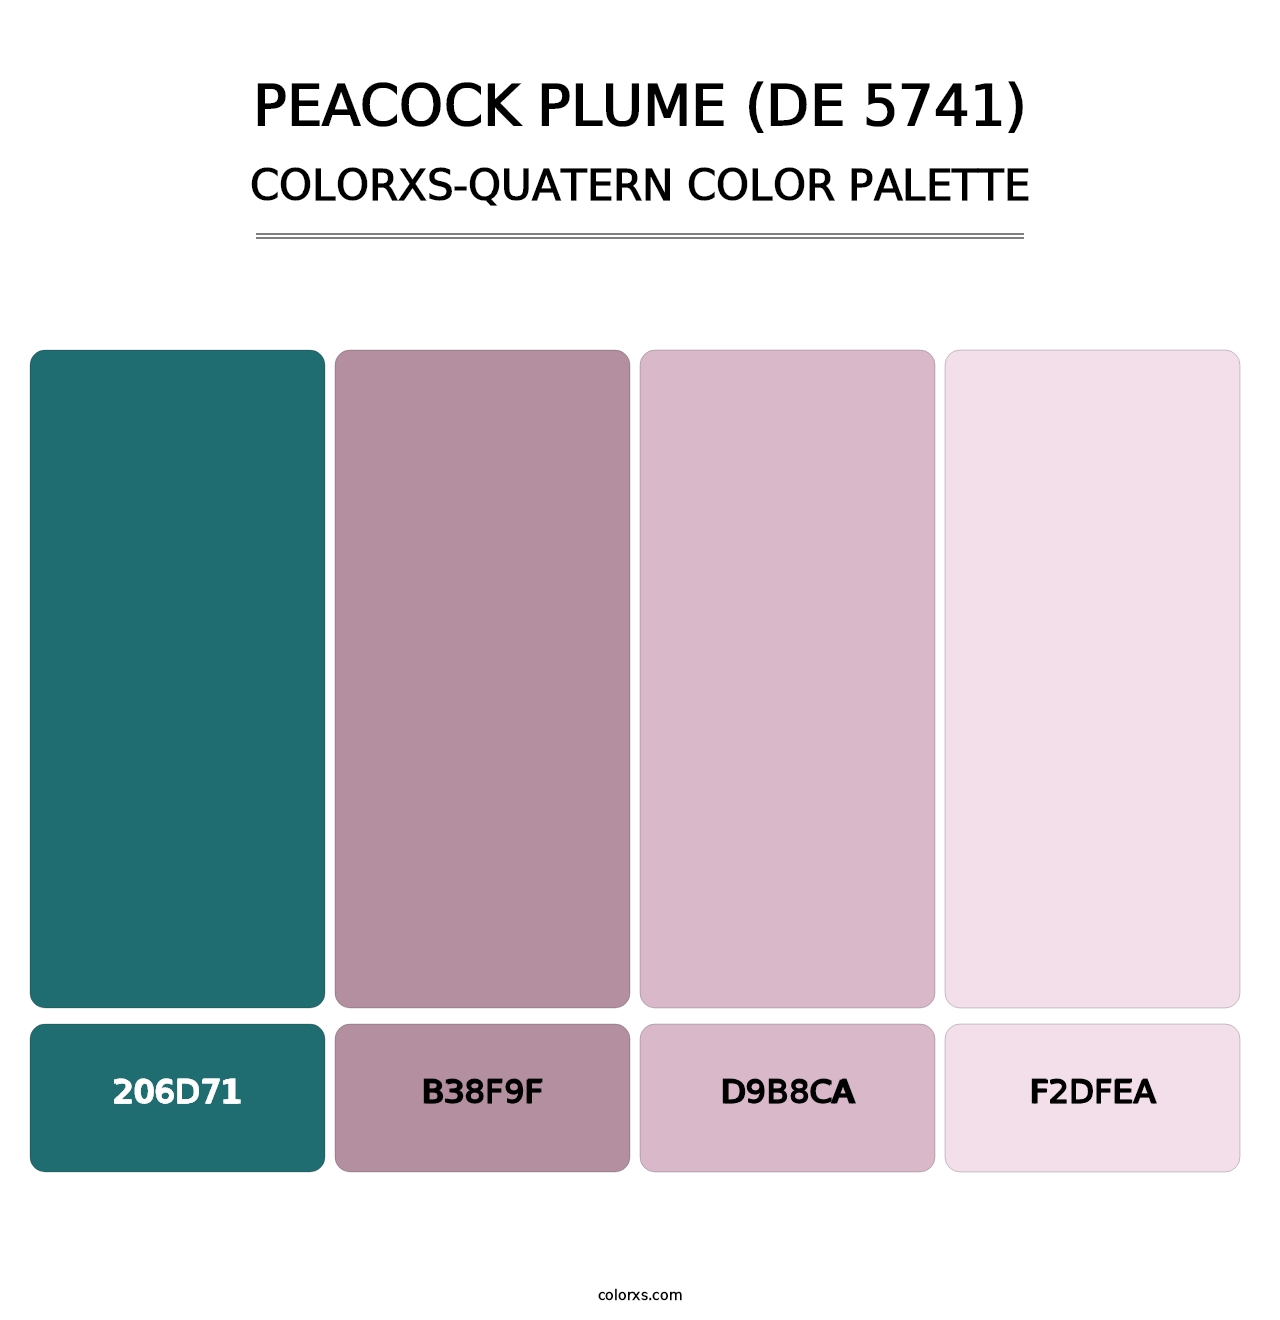 Peacock Plume (DE 5741) - Colorxs Quatern Palette